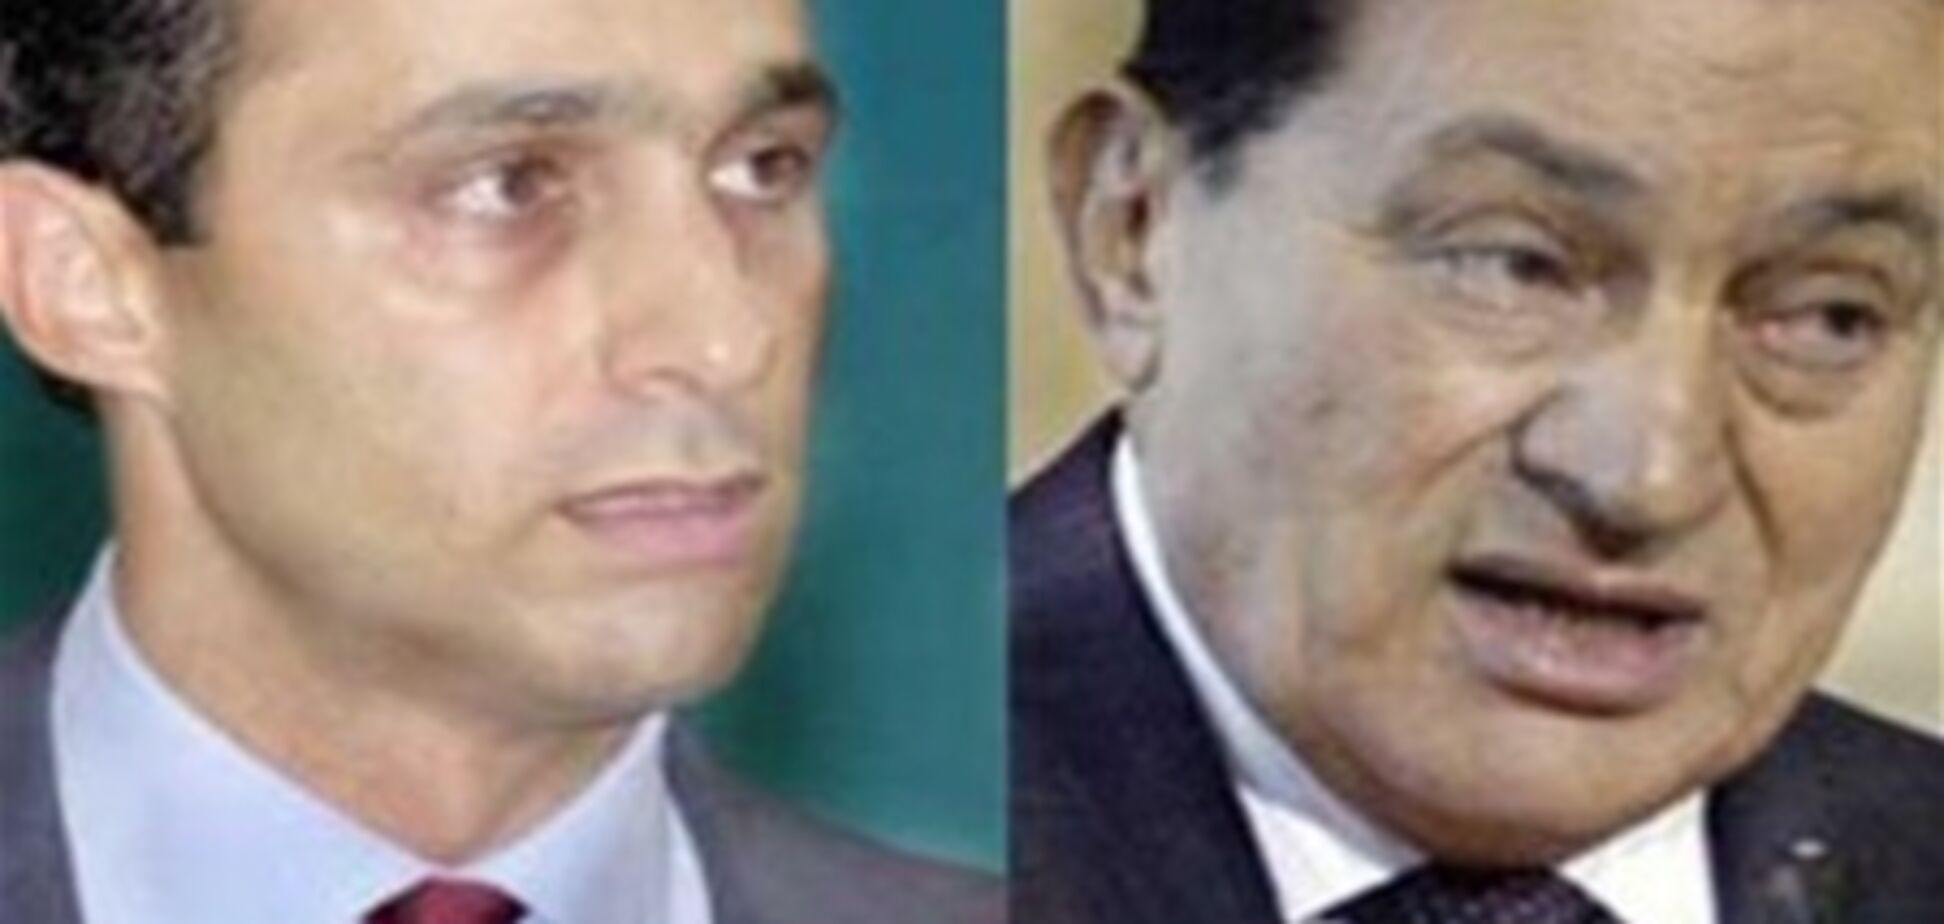 Син Мубарака намагався накласти на себе руки, випивши отруту